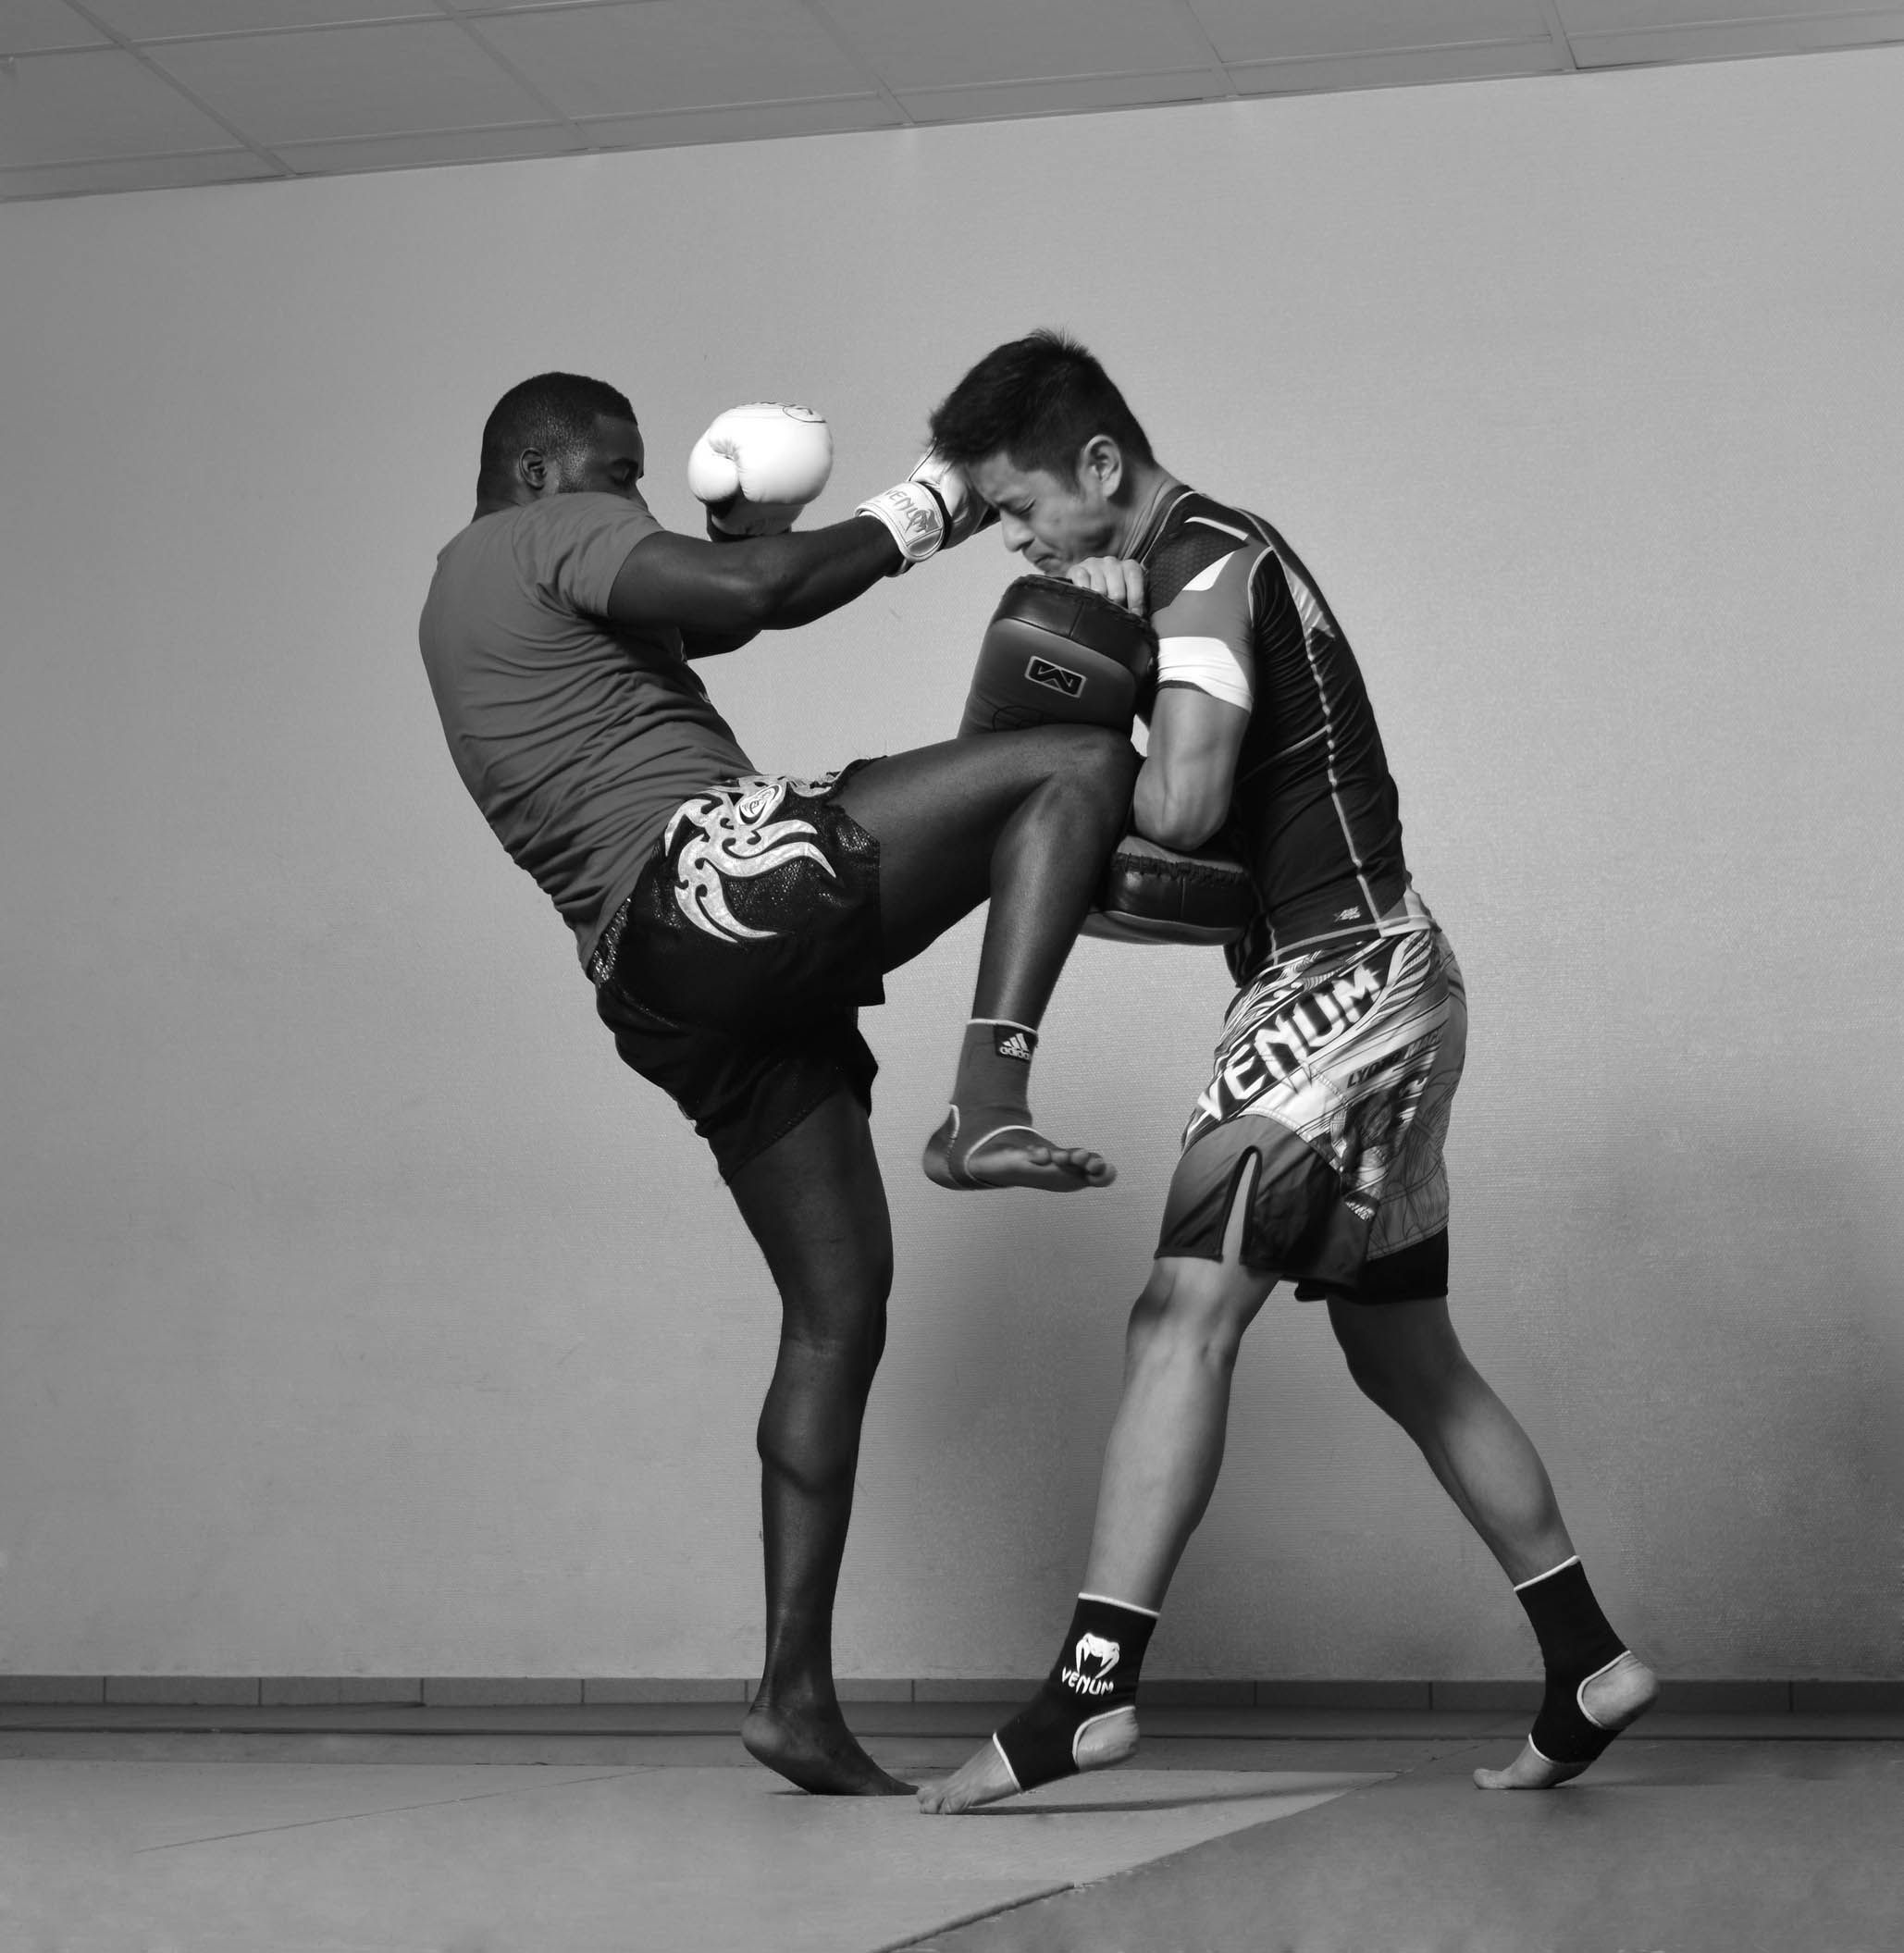 Cours de boxe thailandaise à Rennes chez Défenses Tactiques